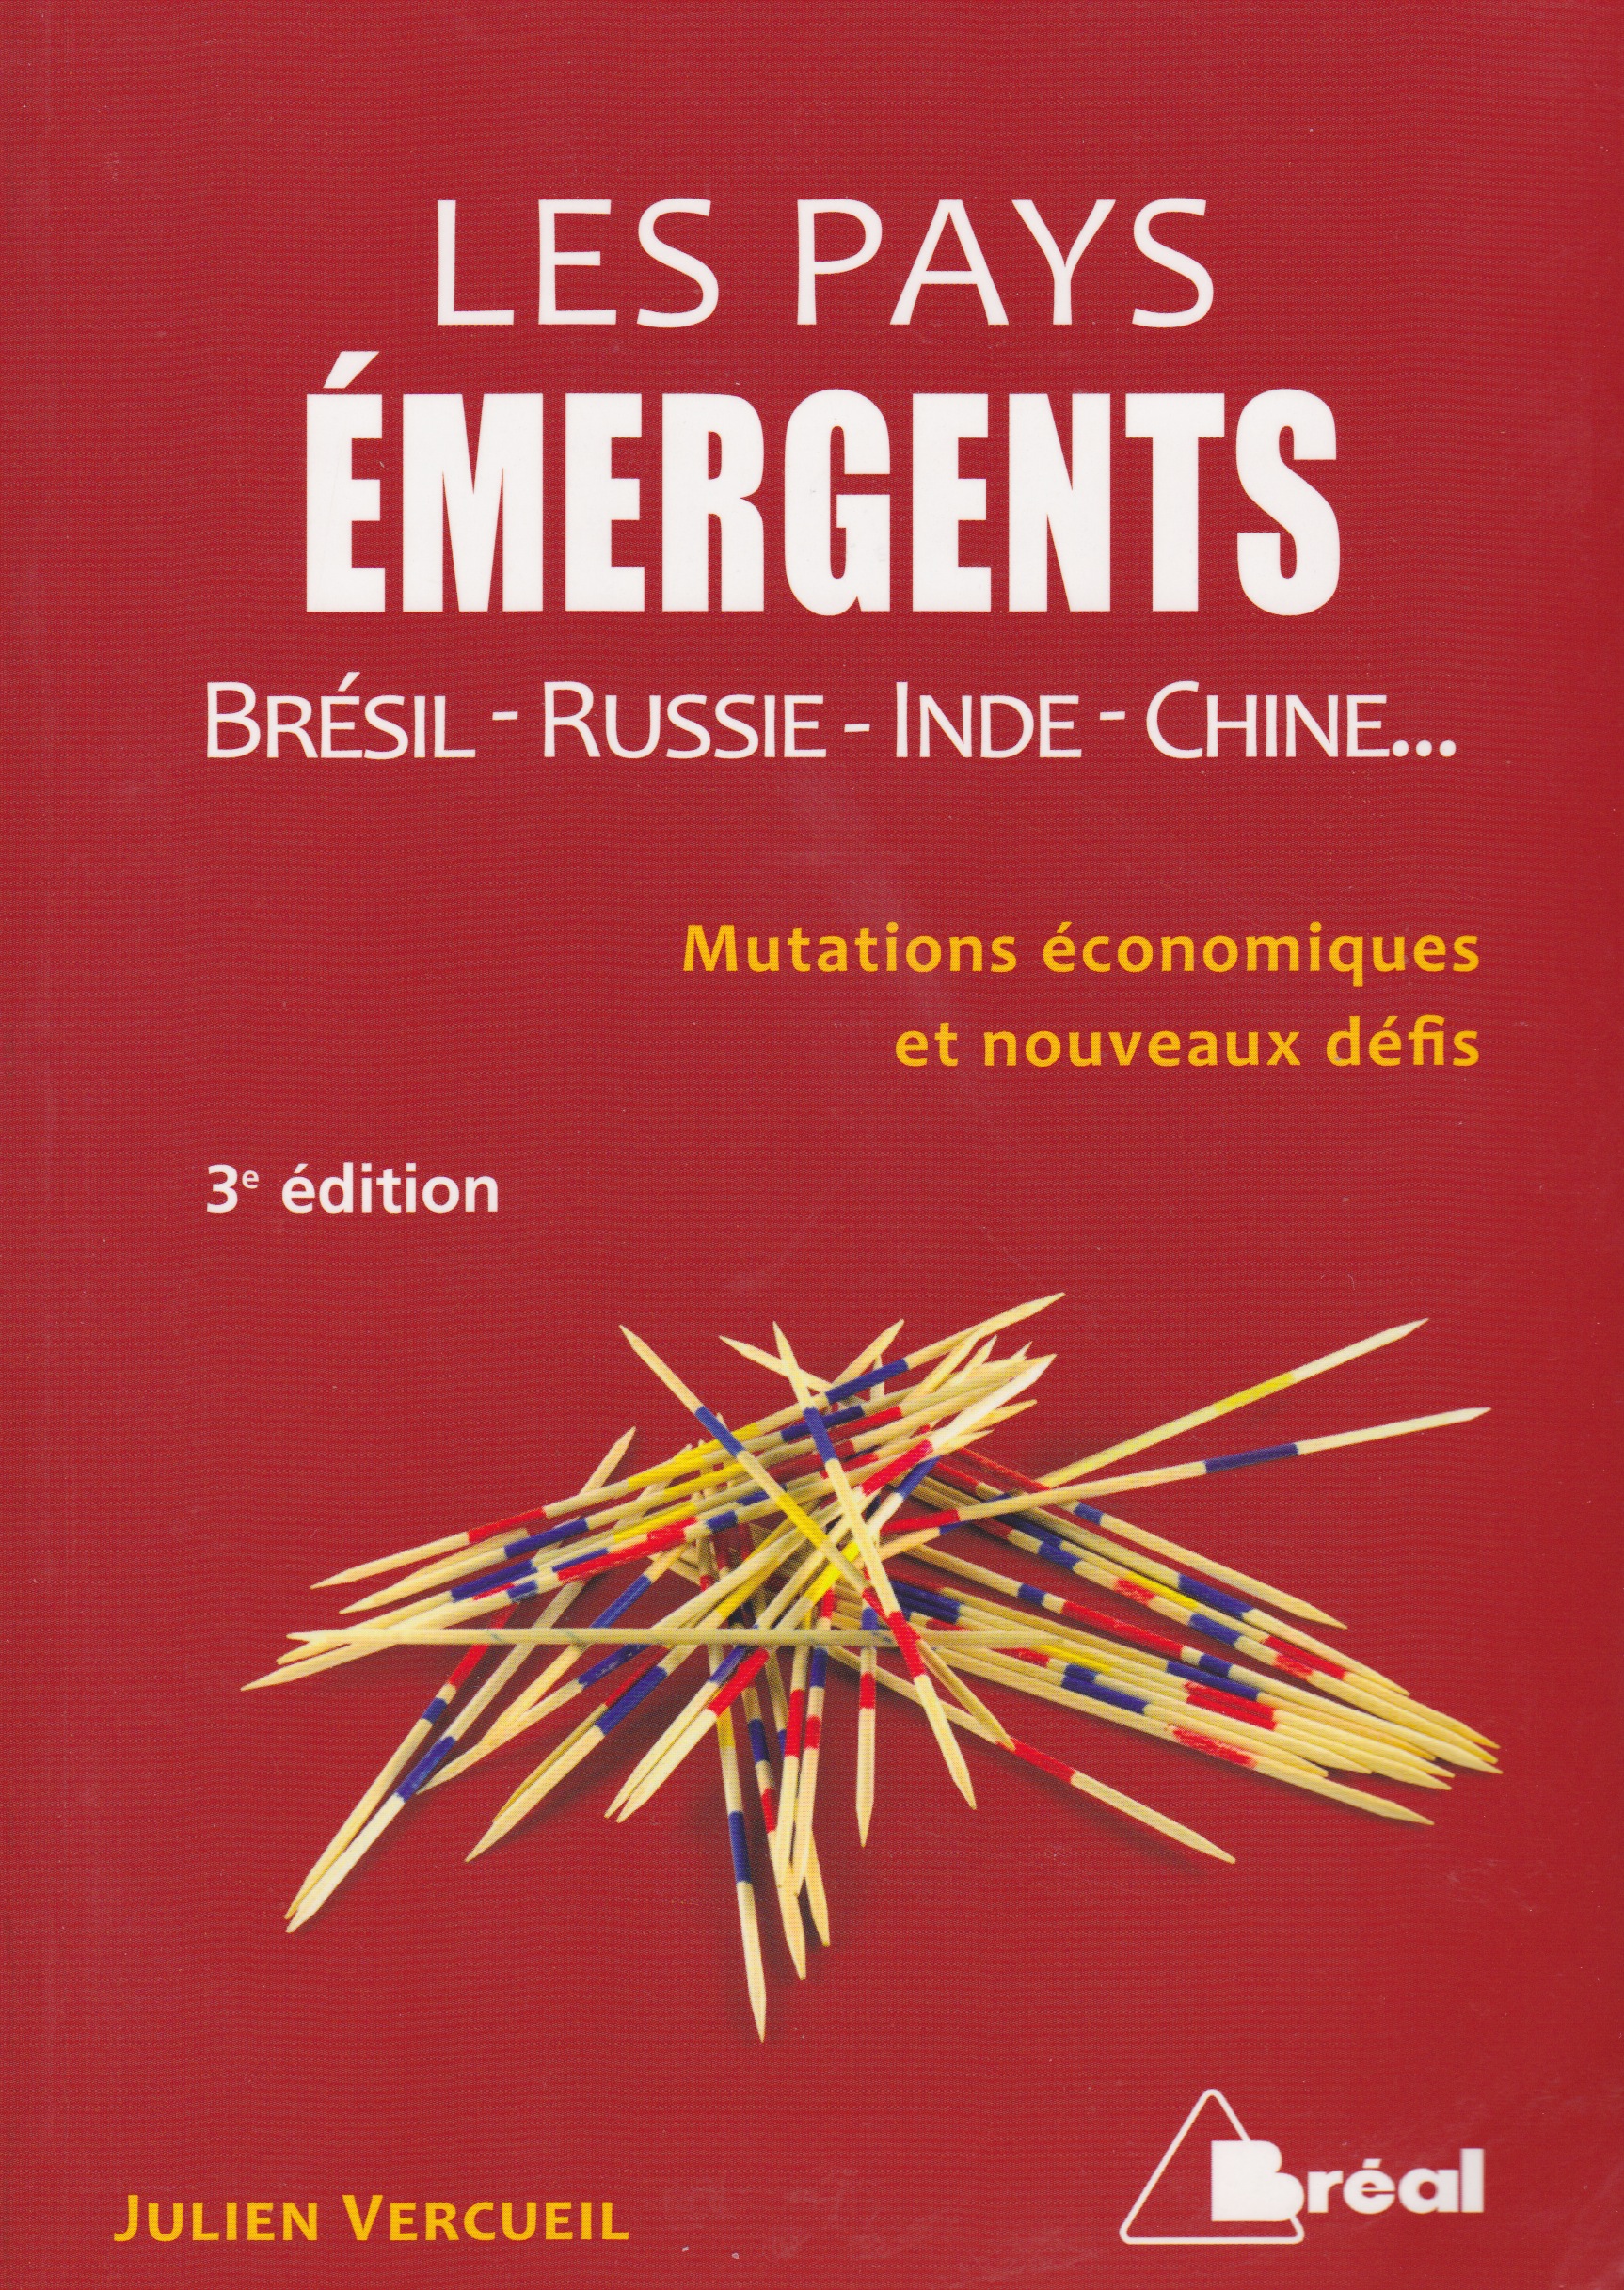 
	Julien VERCUEIL (2012): Les Pays Émergeants. Brésil-Russie-Inde-Chine...